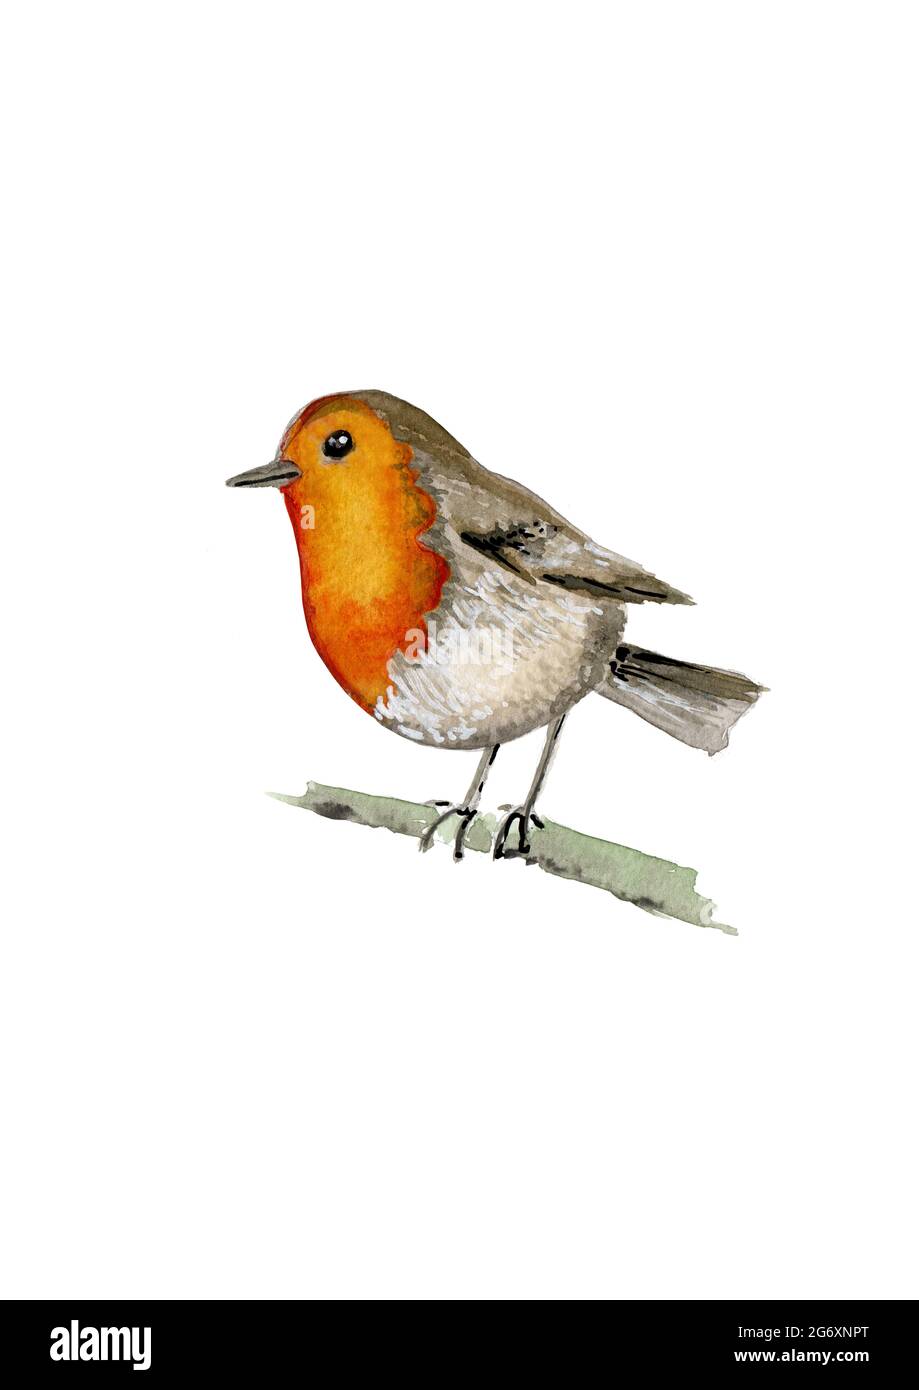 Acquerello dipinto a mano di un uccello robin appollaiato su un ramoscello, isolato su uno sfondo bianco Foto Stock